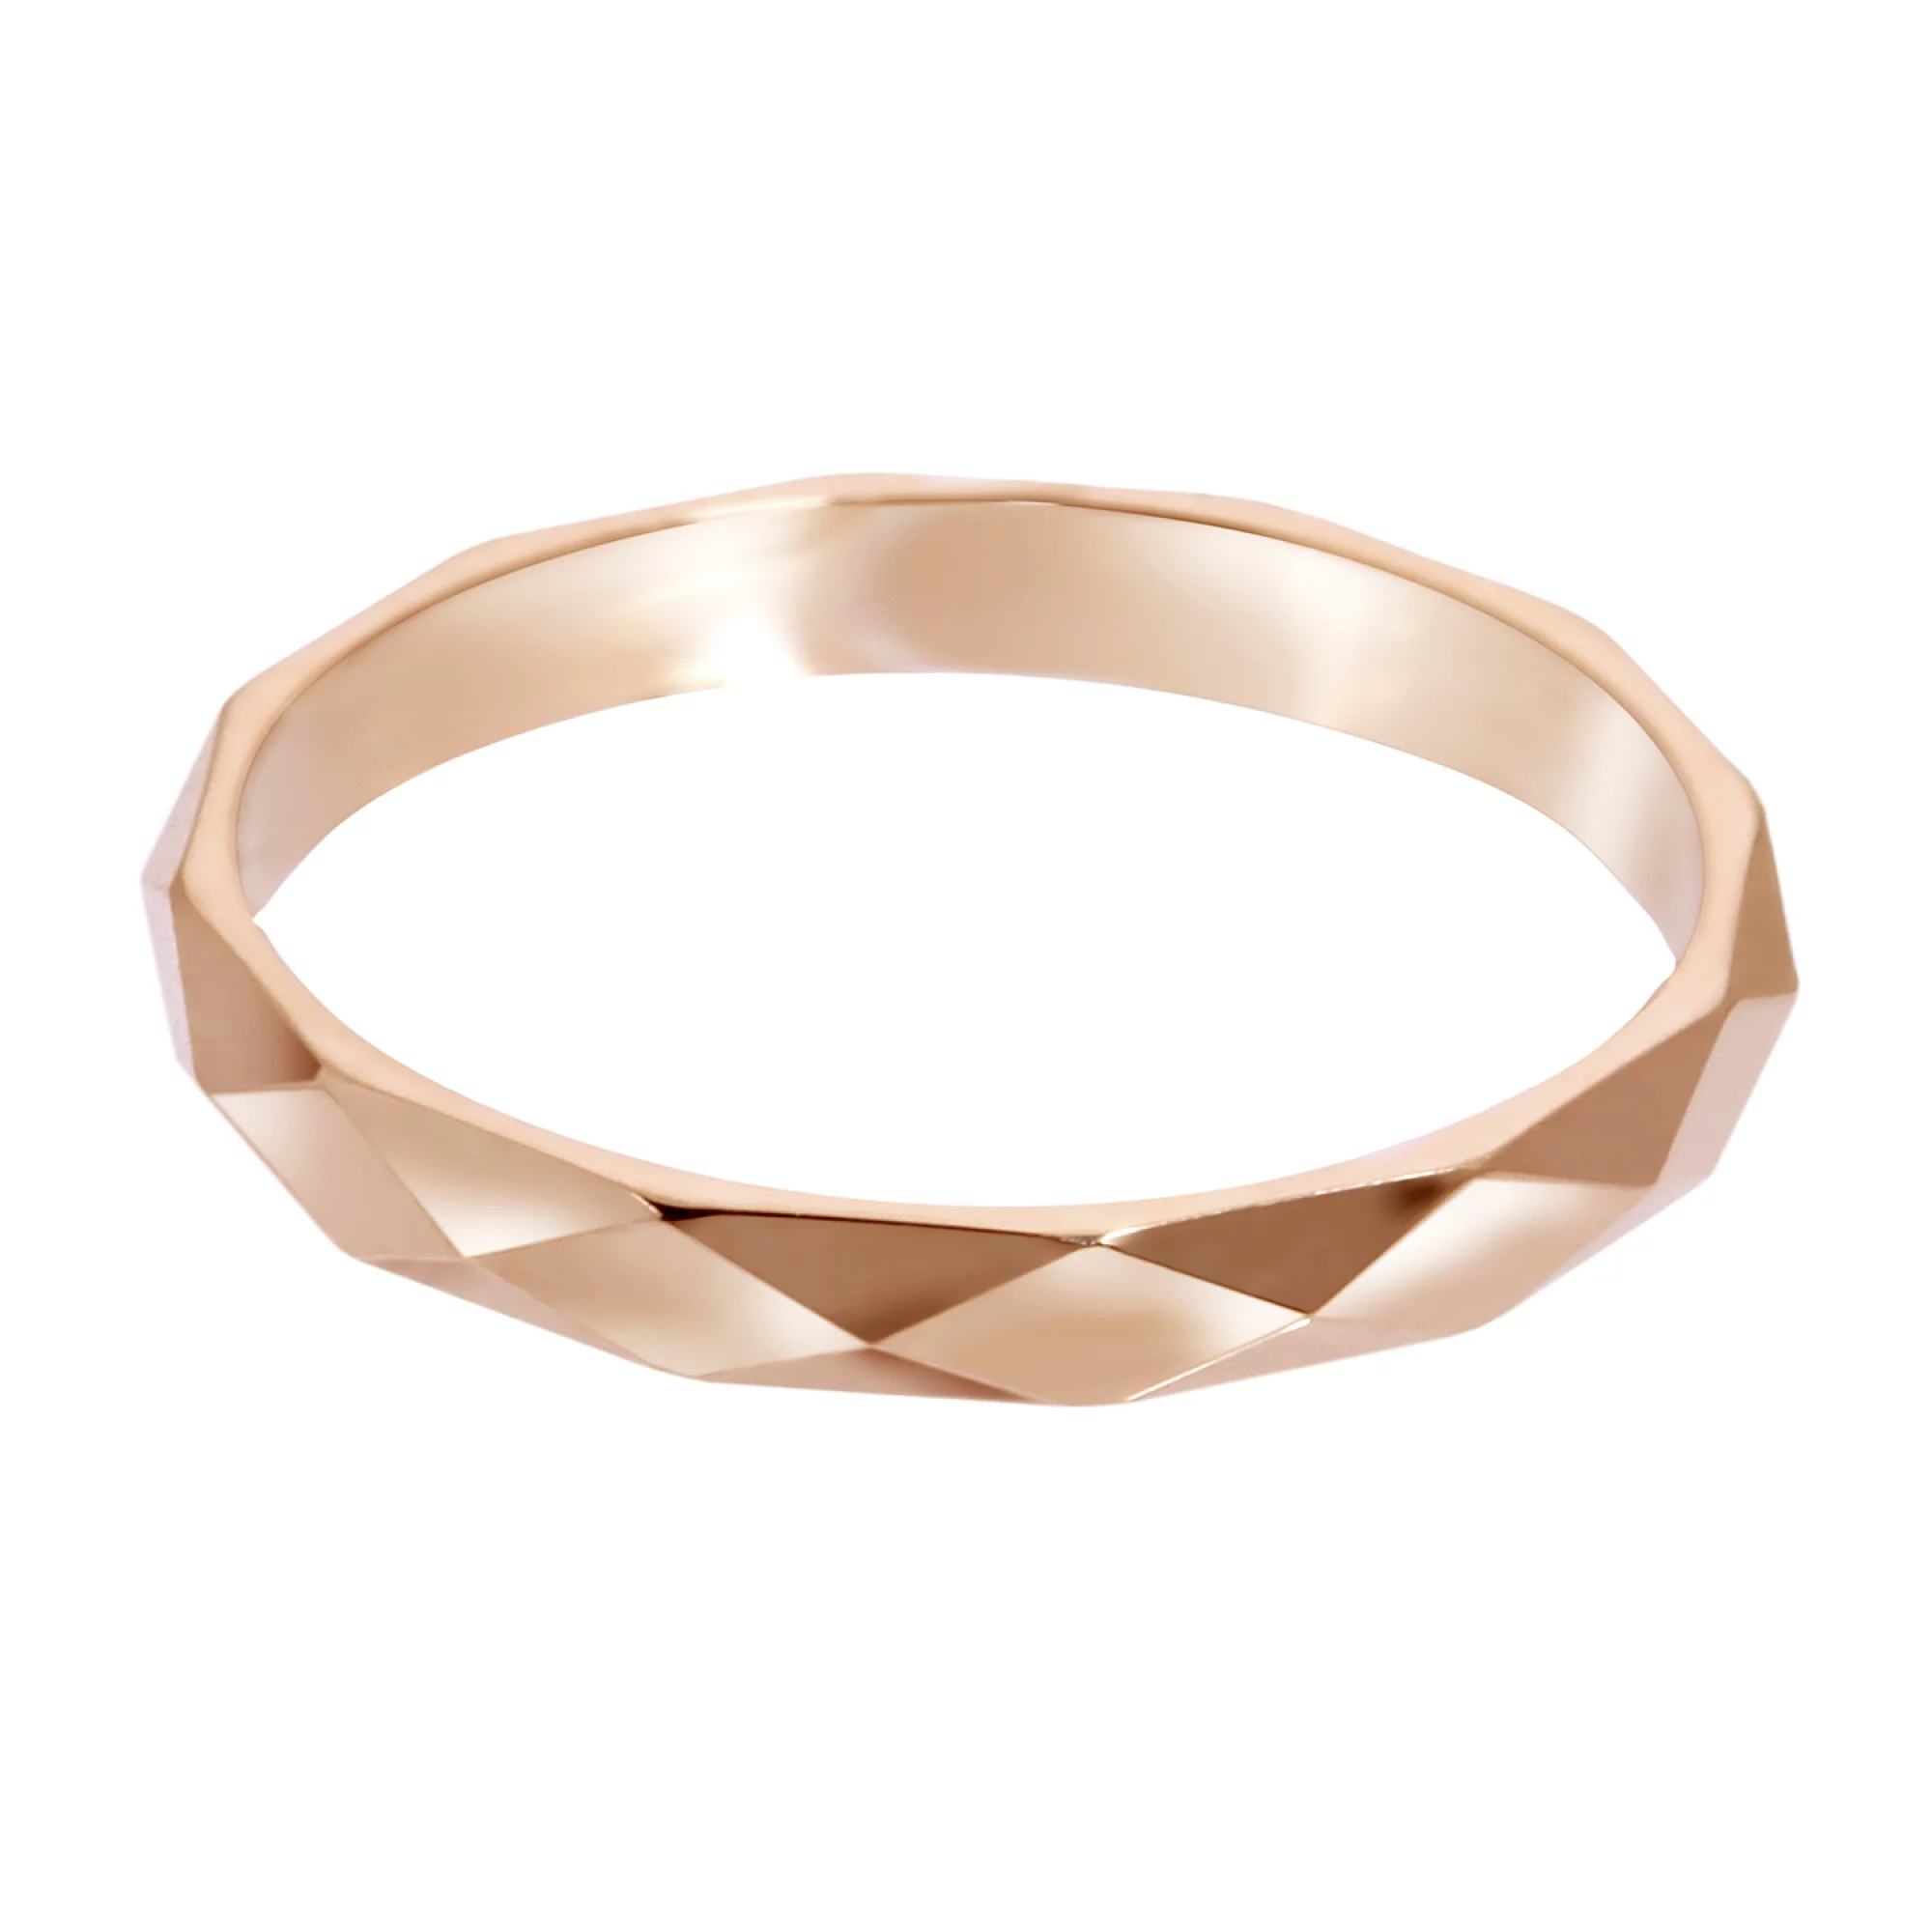 Обручальное кольцо из красного золота с гранями американка - 968100 – изображение 2